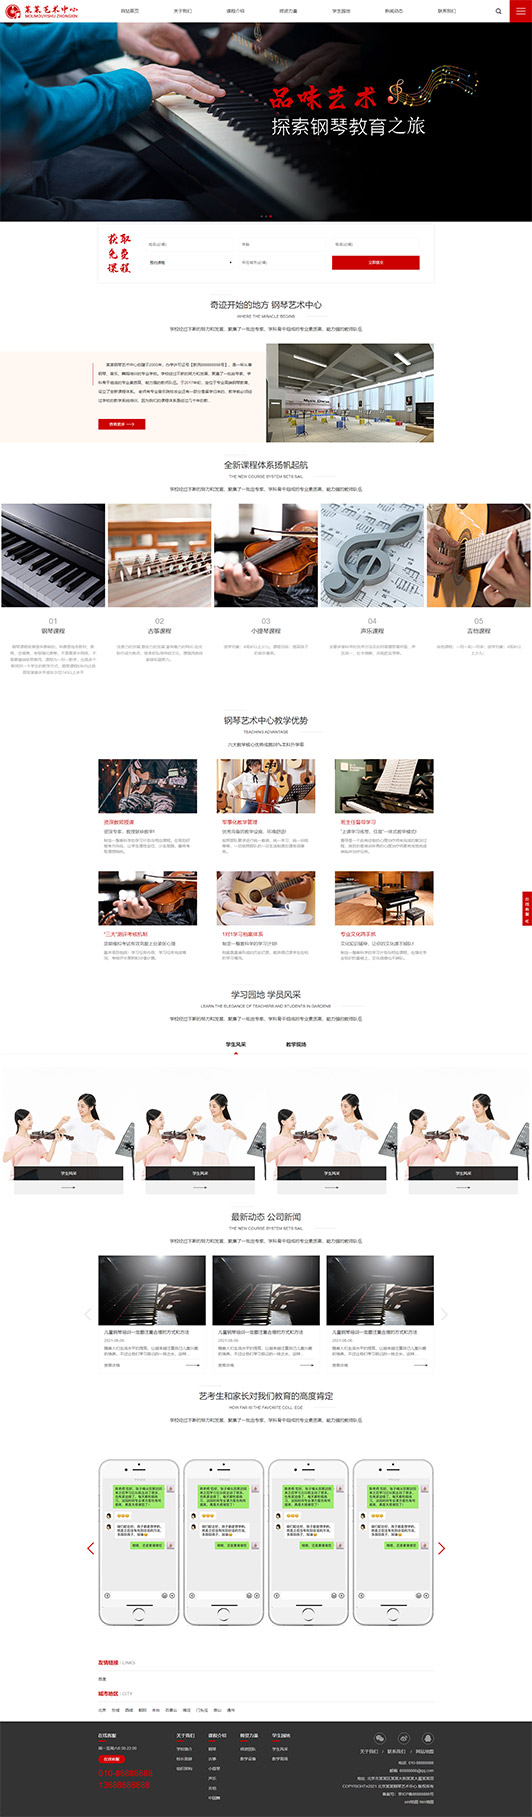 哈密钢琴艺术培训公司响应式企业网站